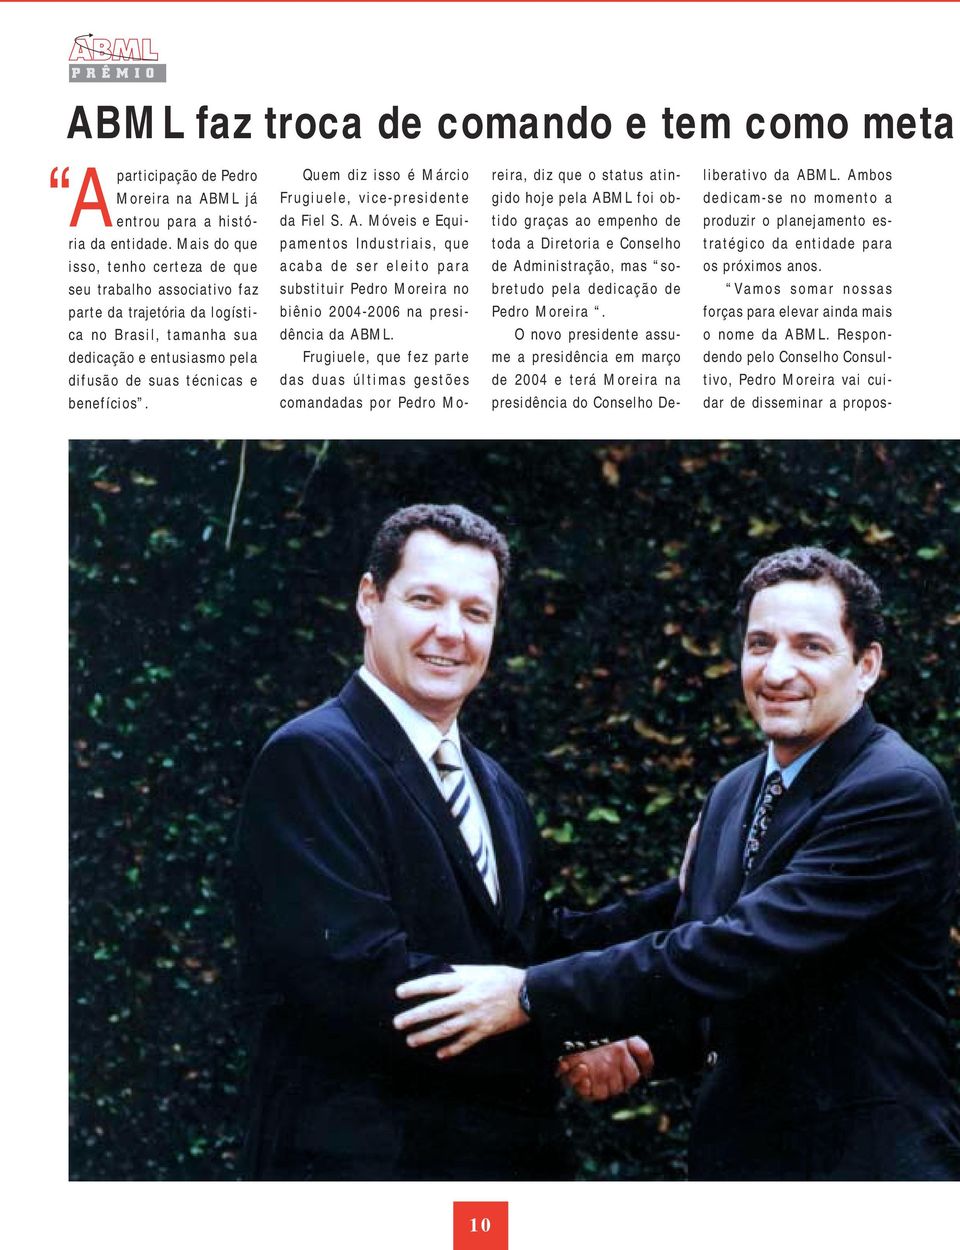 Quem diz isso é Márcio Frugiuele, vice-presidente da Fiel S. A. Móveis e Equipamentos Industriais, que acaba de ser eleito para substituir Pedro Moreira no biênio 2004-2006 na presidência da ABML.